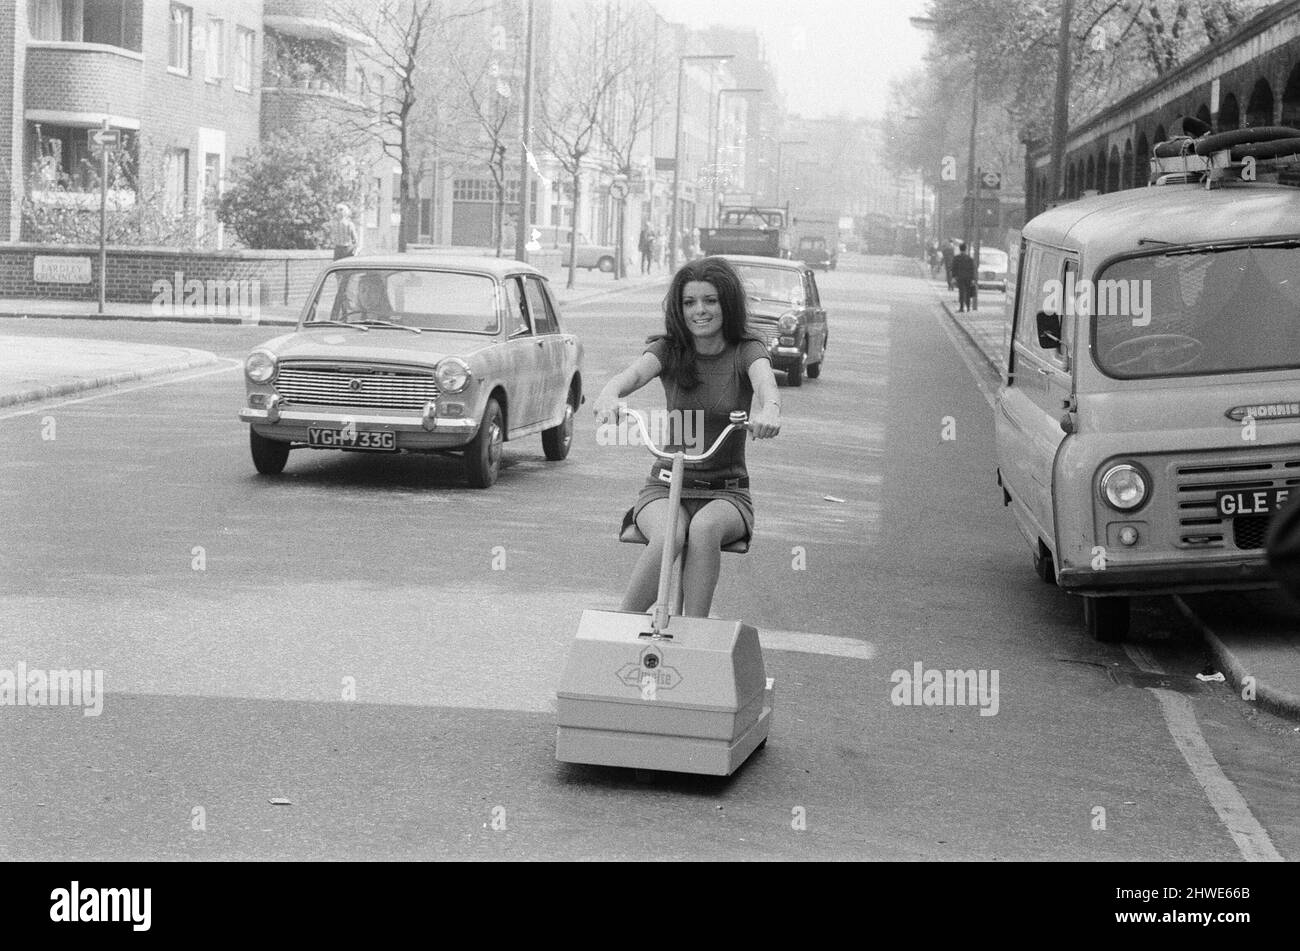 Mechanische Handhabungsausstellung, Earls Court, London, Dienstag, 5.. Mai 1970. Unser Bild Zeigt ... Lynne Hamilton demonstriert einen batteriebetriebenen, rauchfreien Betriebslauf auf den Straßen Londons. Stockfoto